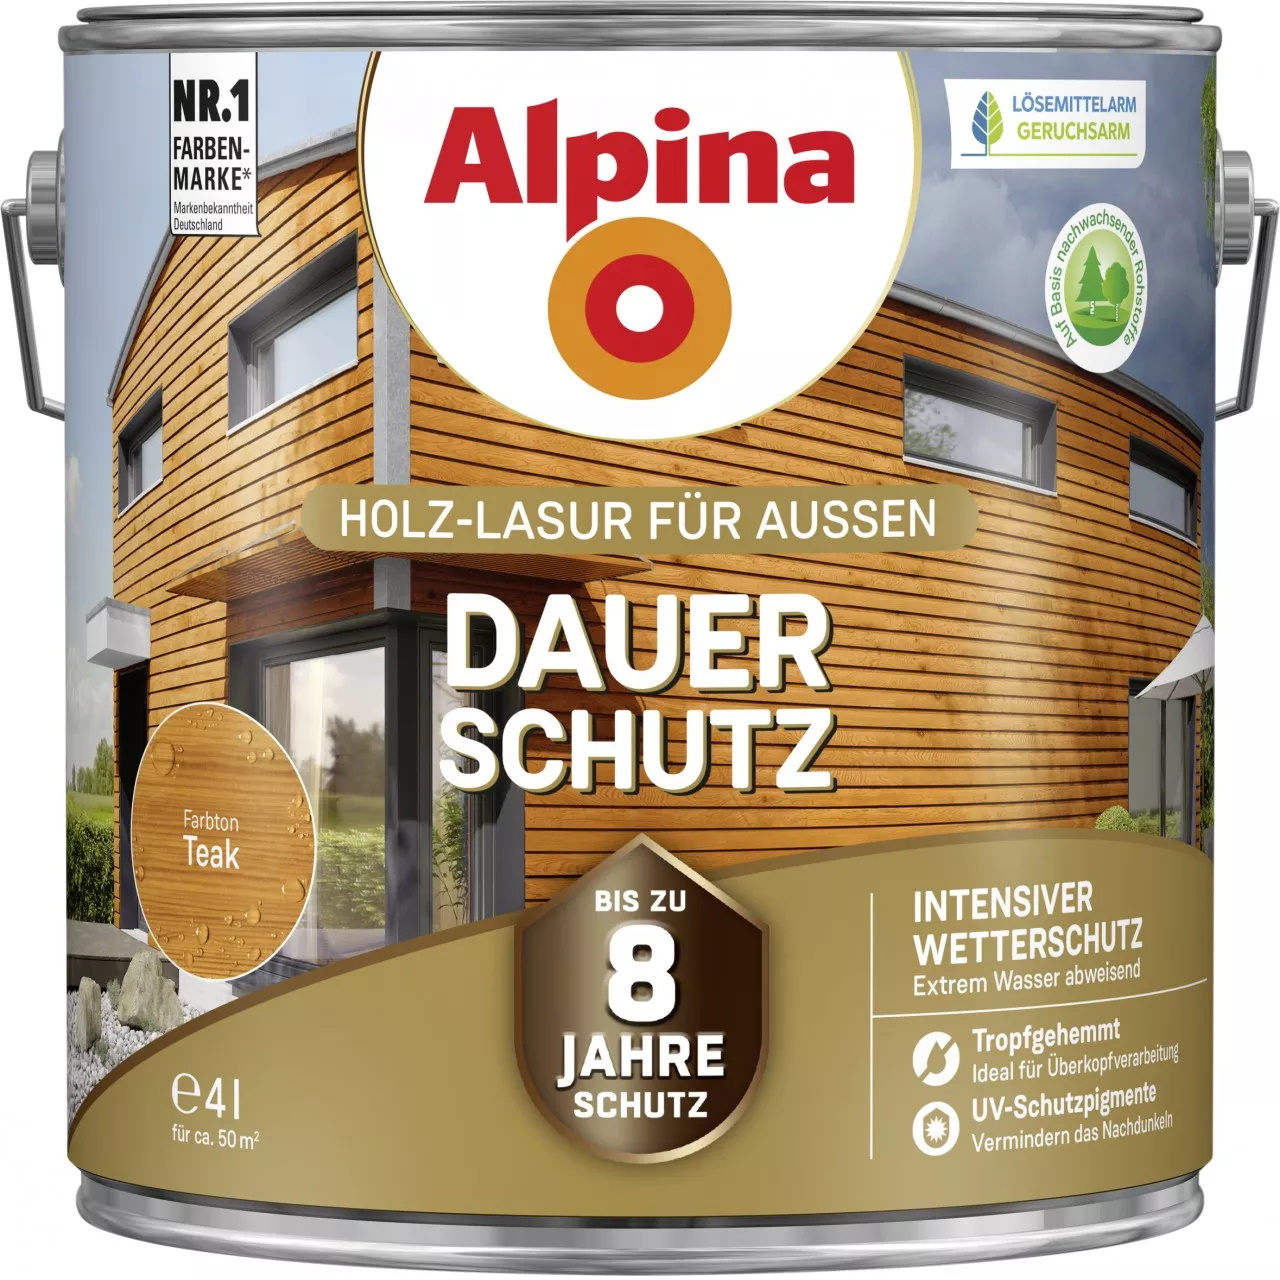 Alpina Dauer-Schutz Holz-Lasur für Außen Teak 4 Liter